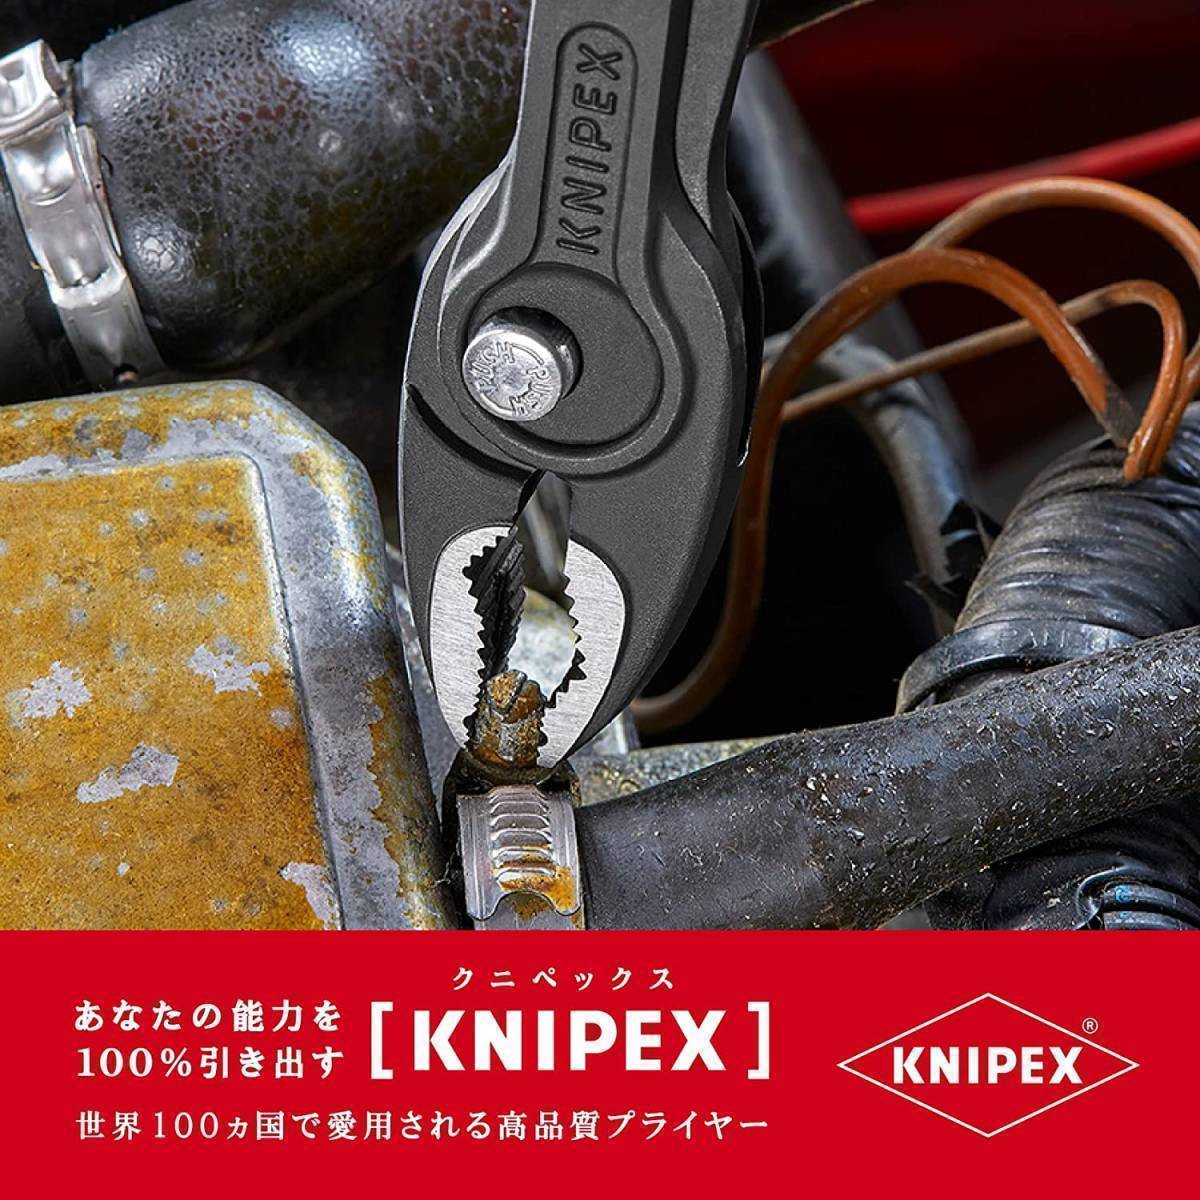 KNIPEX (クニペックス ) 8202 200 ツイングリップ スリップジョイントプライヤー_画像4